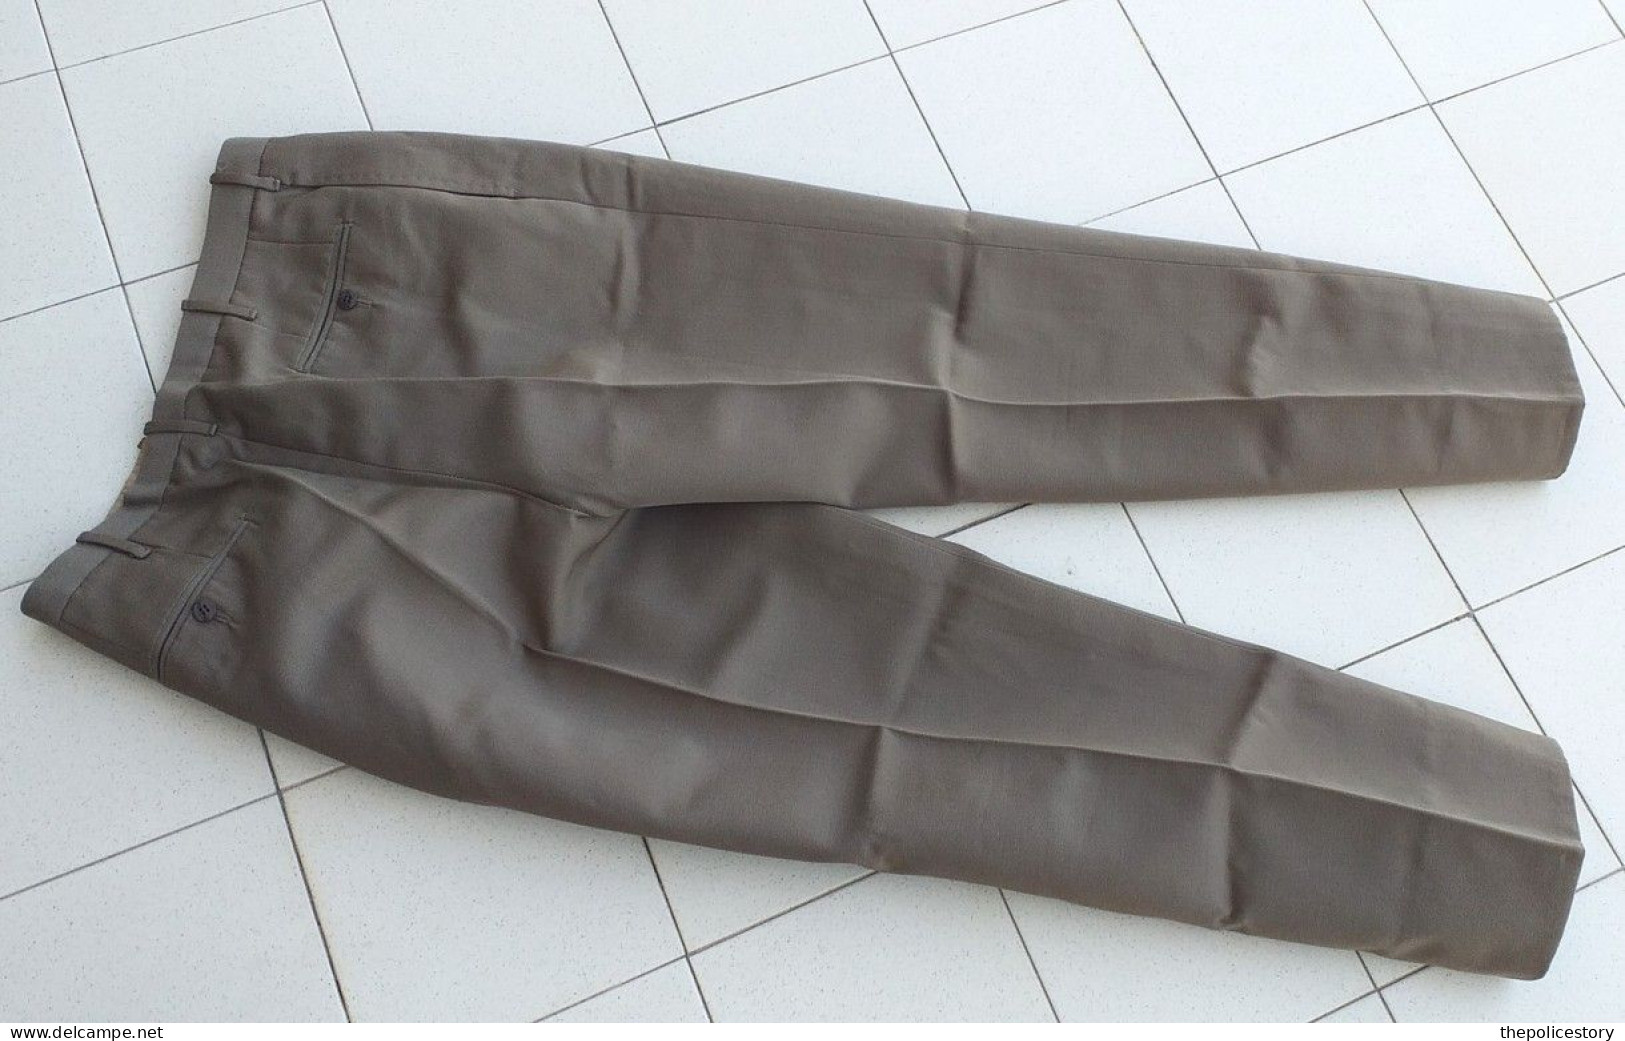 Giacca pantaloni M48 camicia cravatta S.Ten. Lanceri Montebello 1967